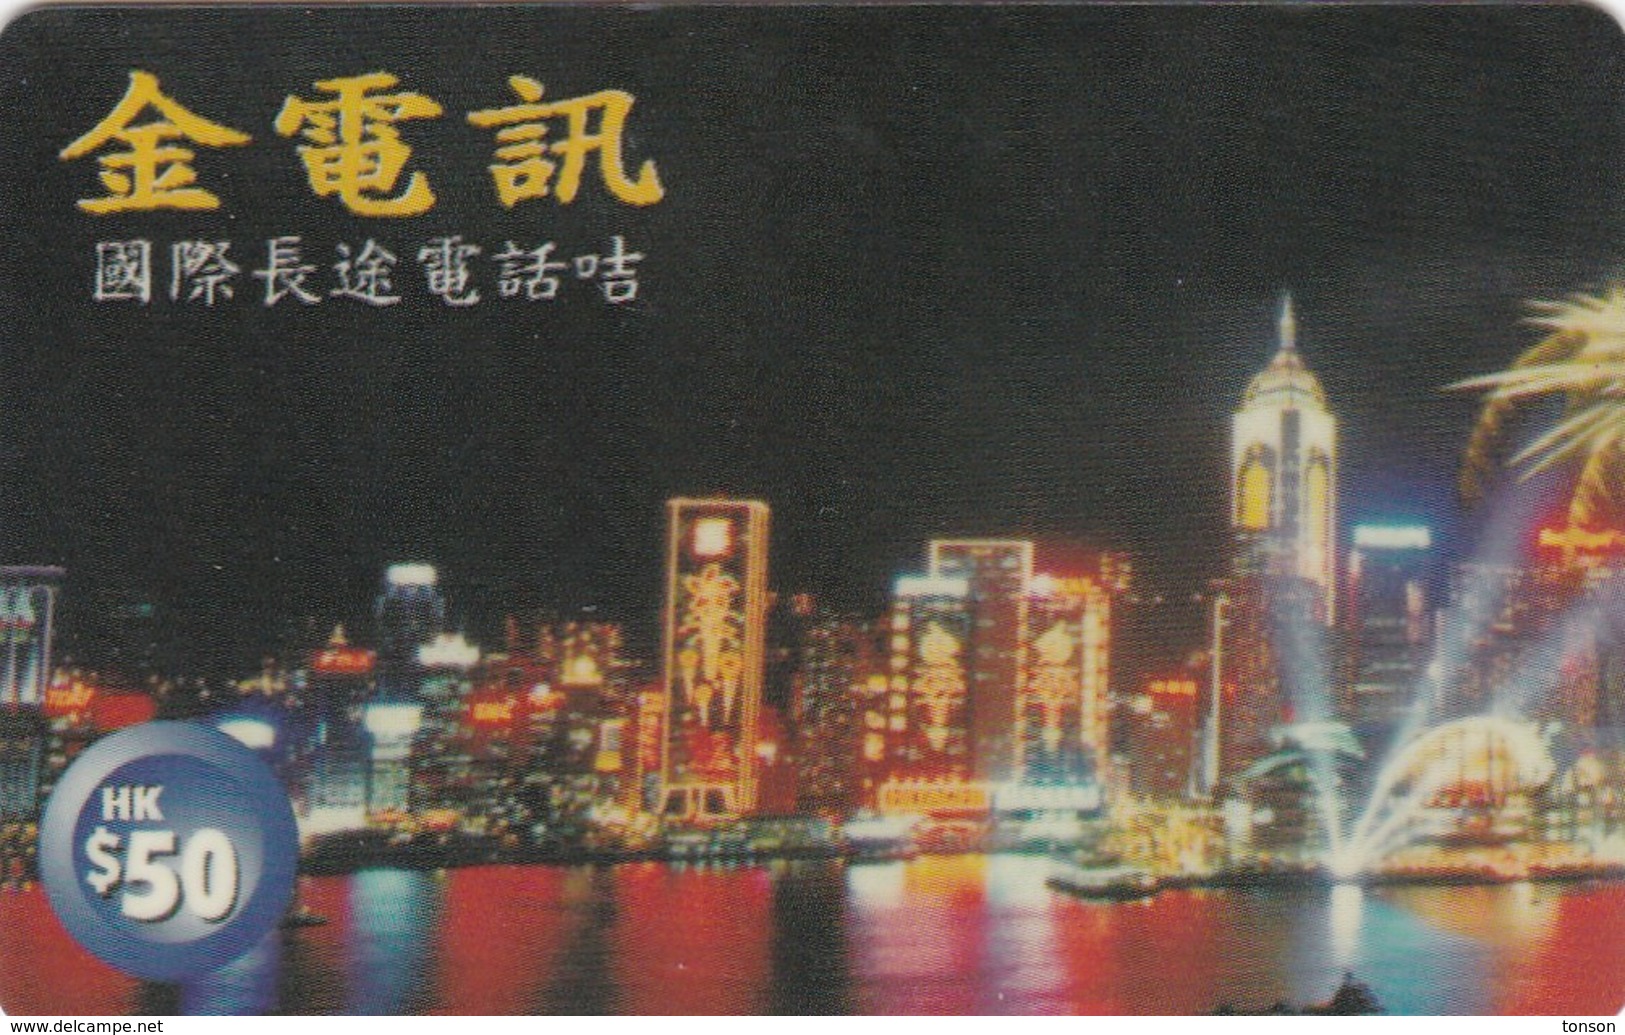 Hong Kong, PRE-HK-1120.2 Or 3, Hong Kong Appearance - $ 50, 2 Scans. - Hong Kong